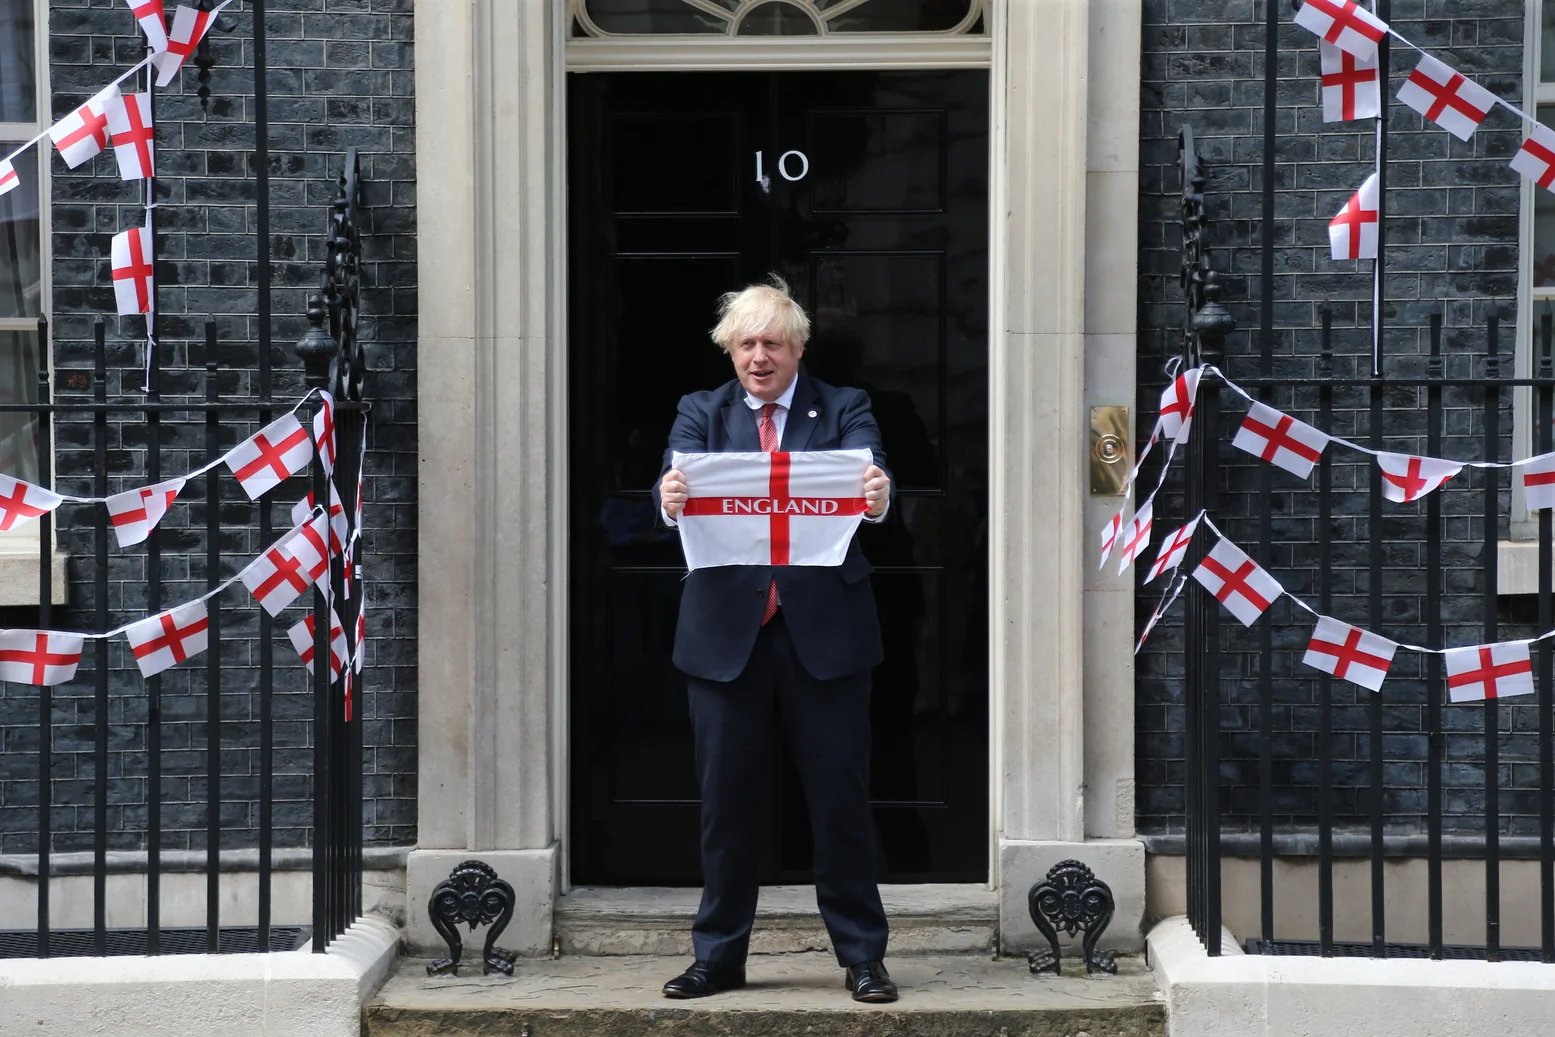 Boris Johnson holds England flag outside Number 10